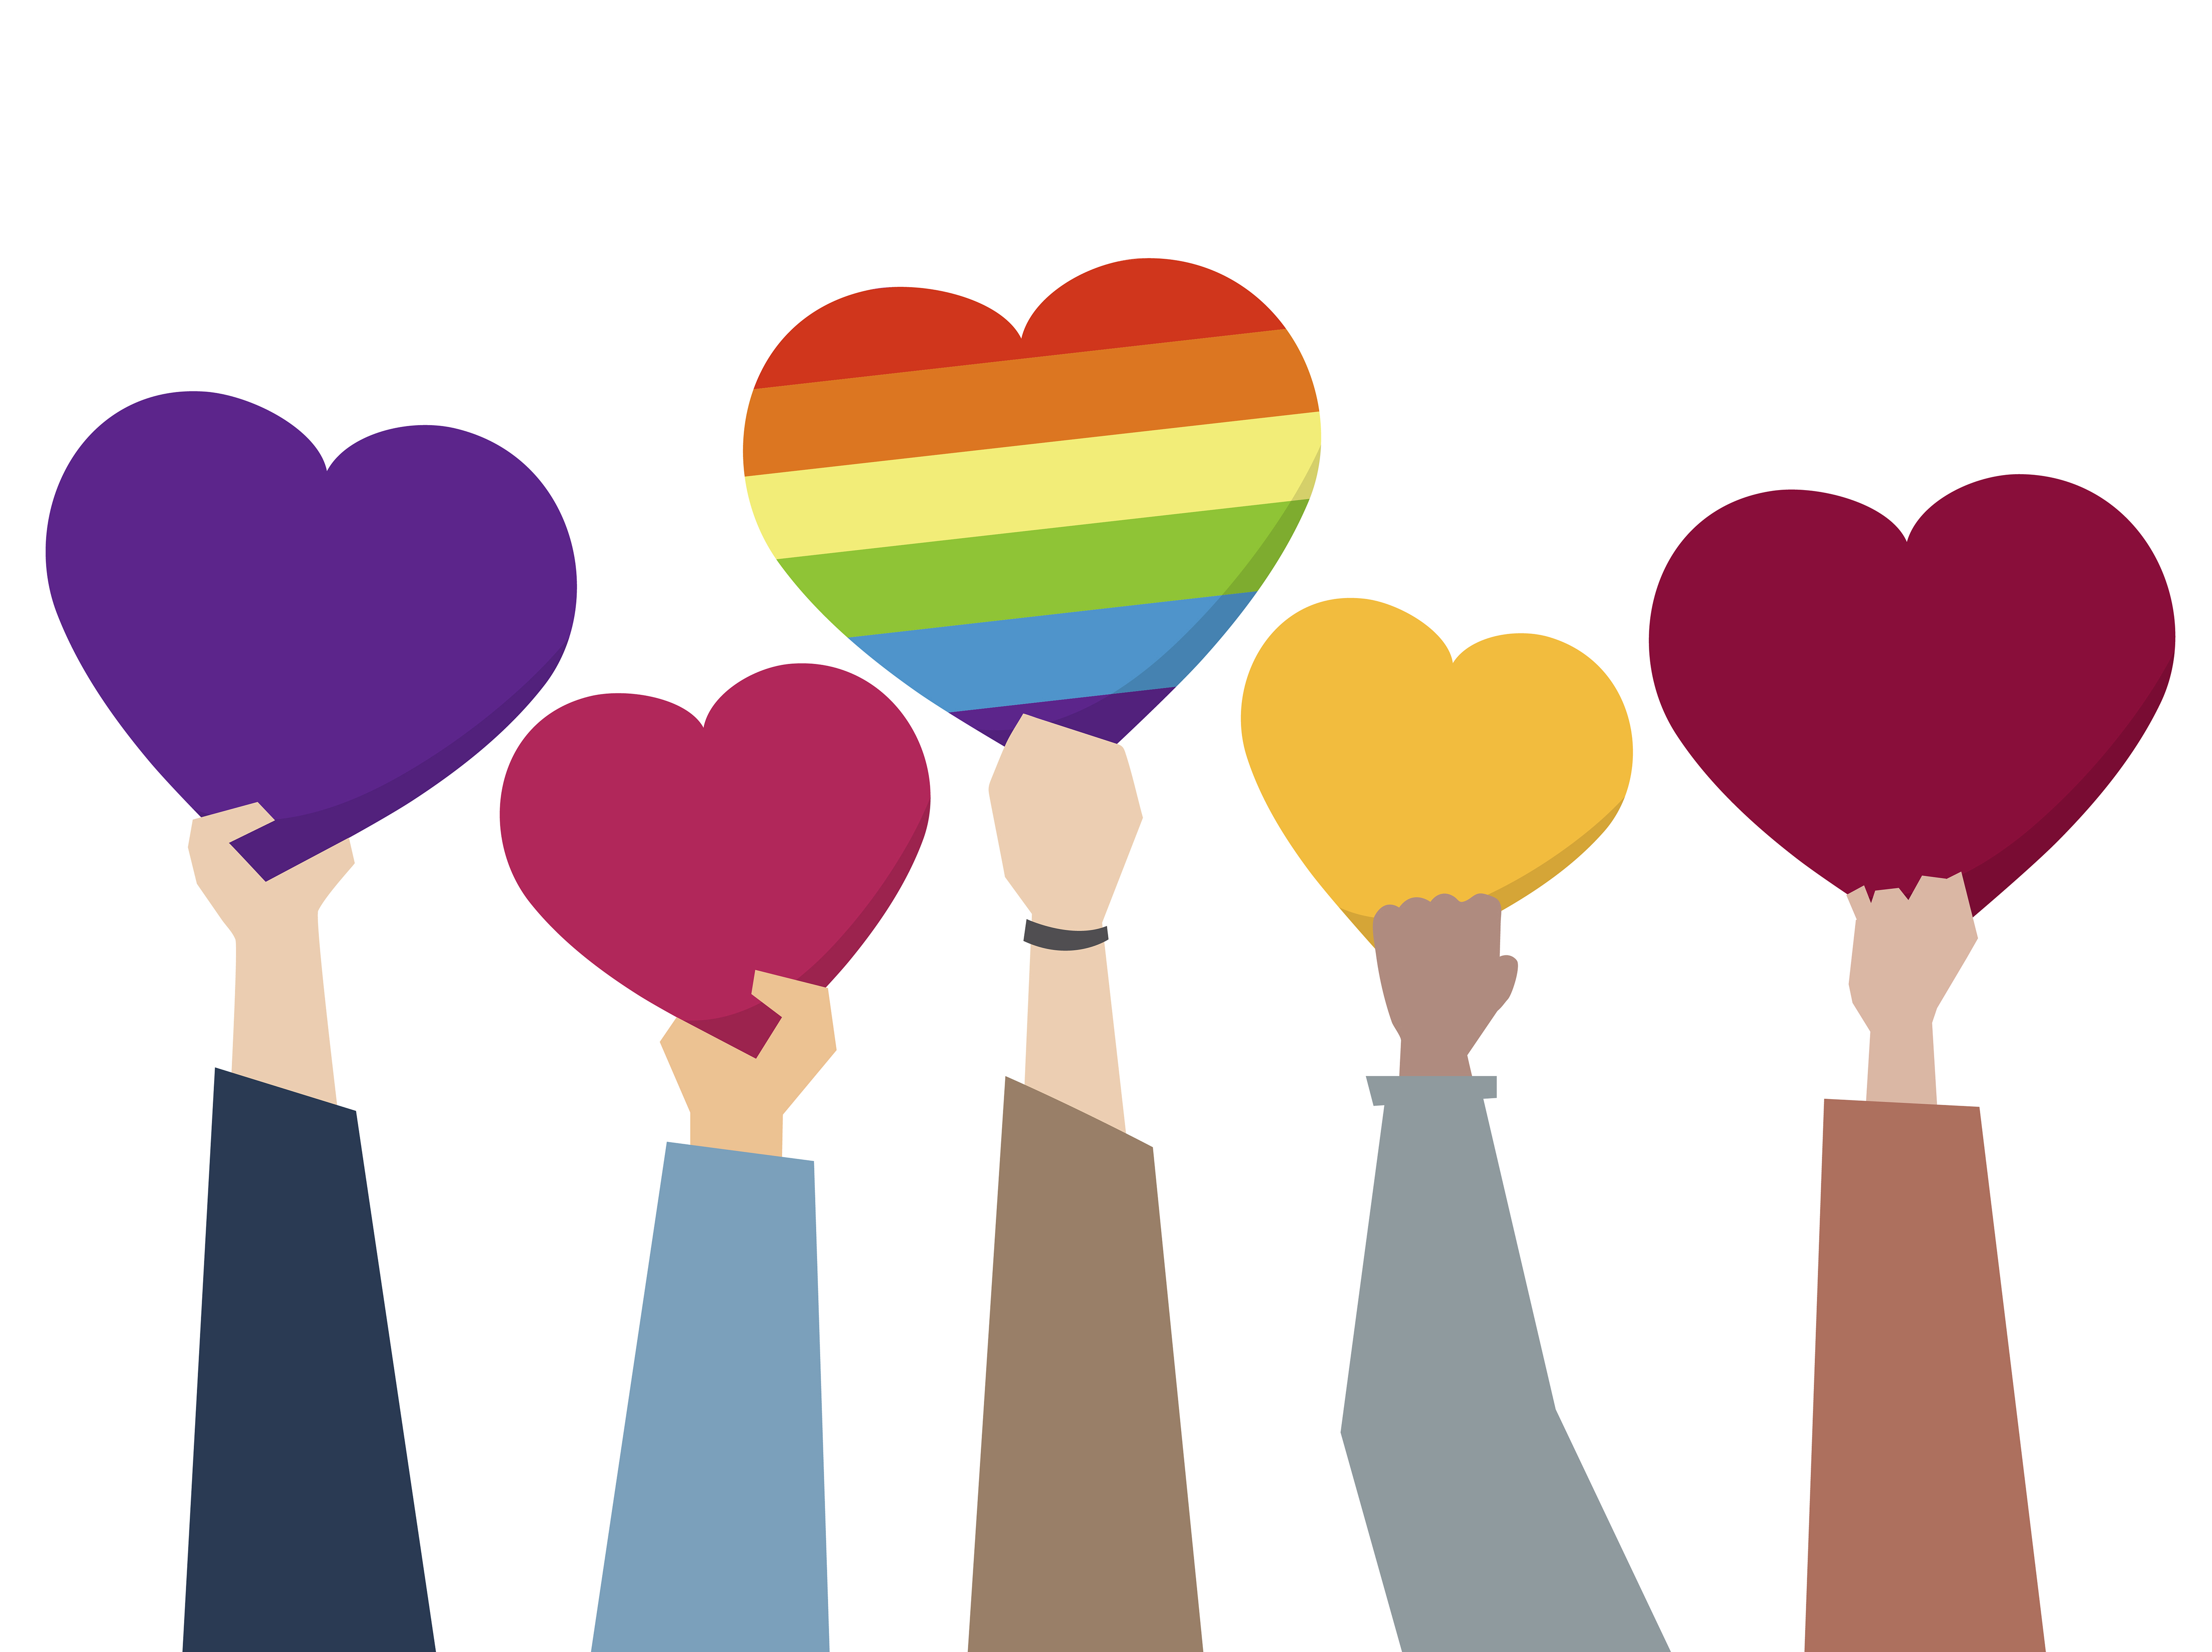 LGBTQ love heart symbol - Download Free Vectors, Clipart Graphics ...